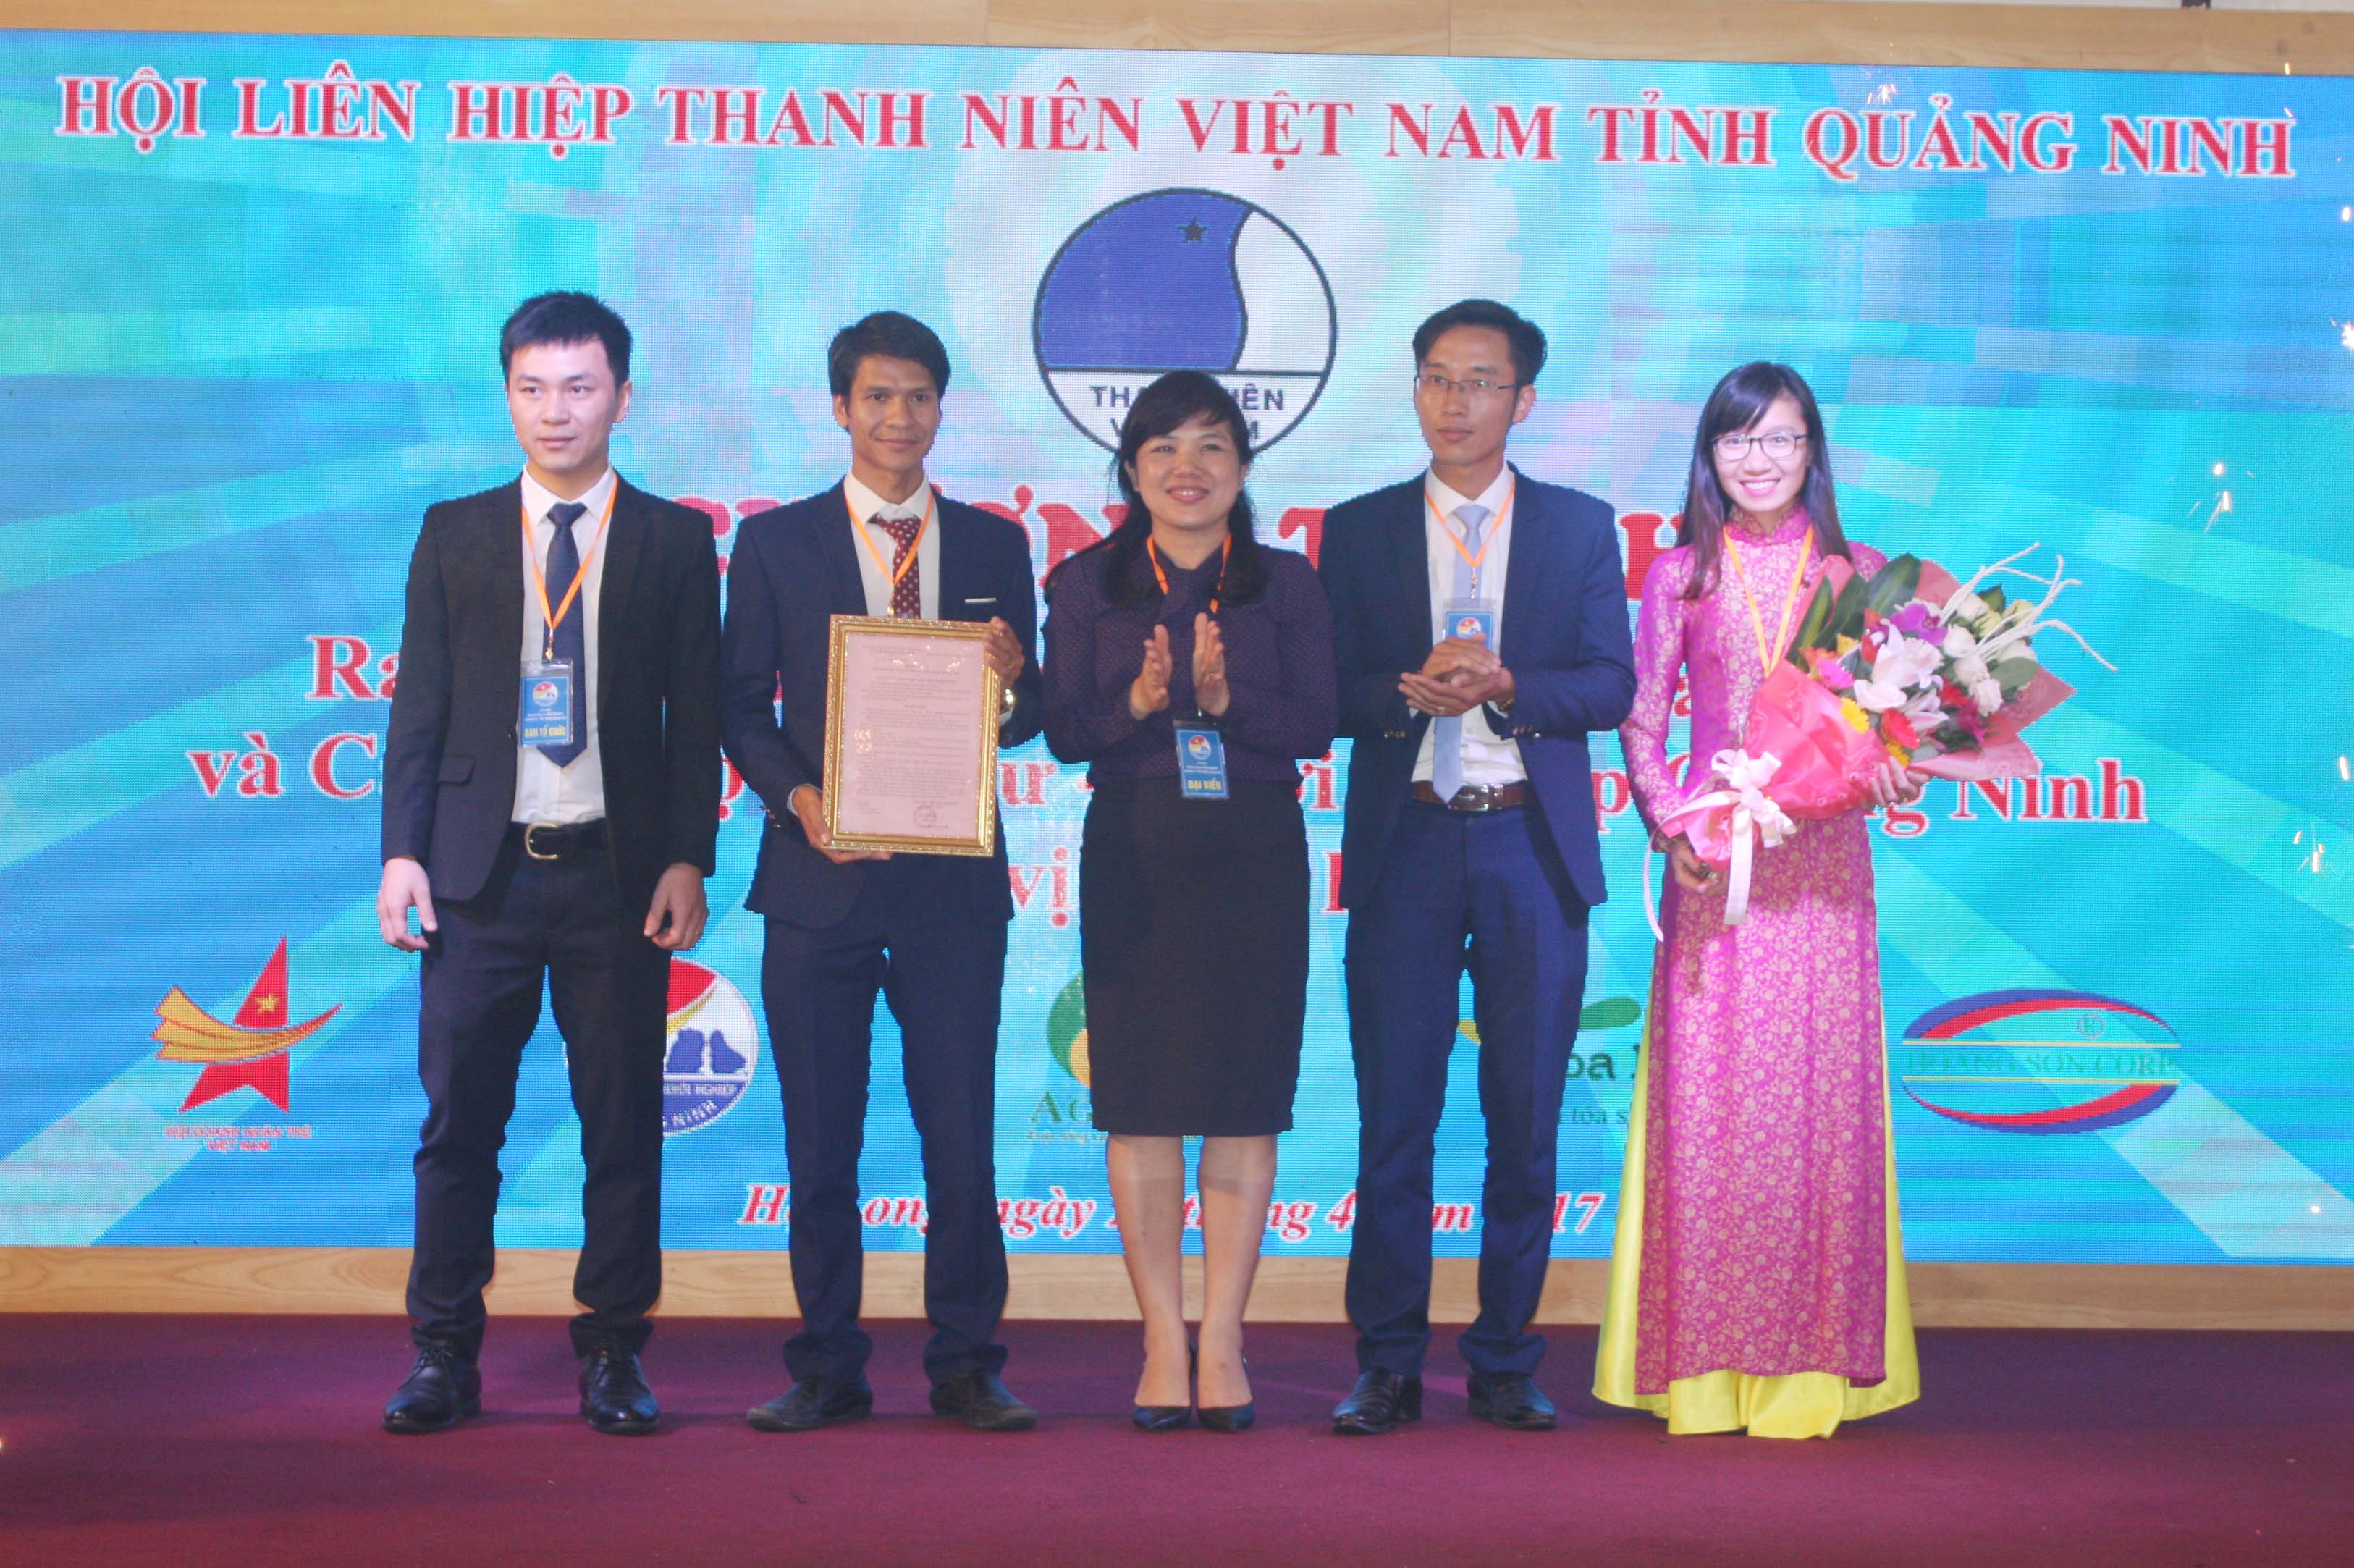 Đồng chí Nguyễn Thị Thu Hà, Bí thư Tỉnh Đoàn, Chủ tịch Hội LHTN tỉnh trao quyết định thành lập câu lạc bộ Đầu tư - Khởi nghiệp Quảng Ninh cho Ban chủ nhiệm câu lạc bộ.